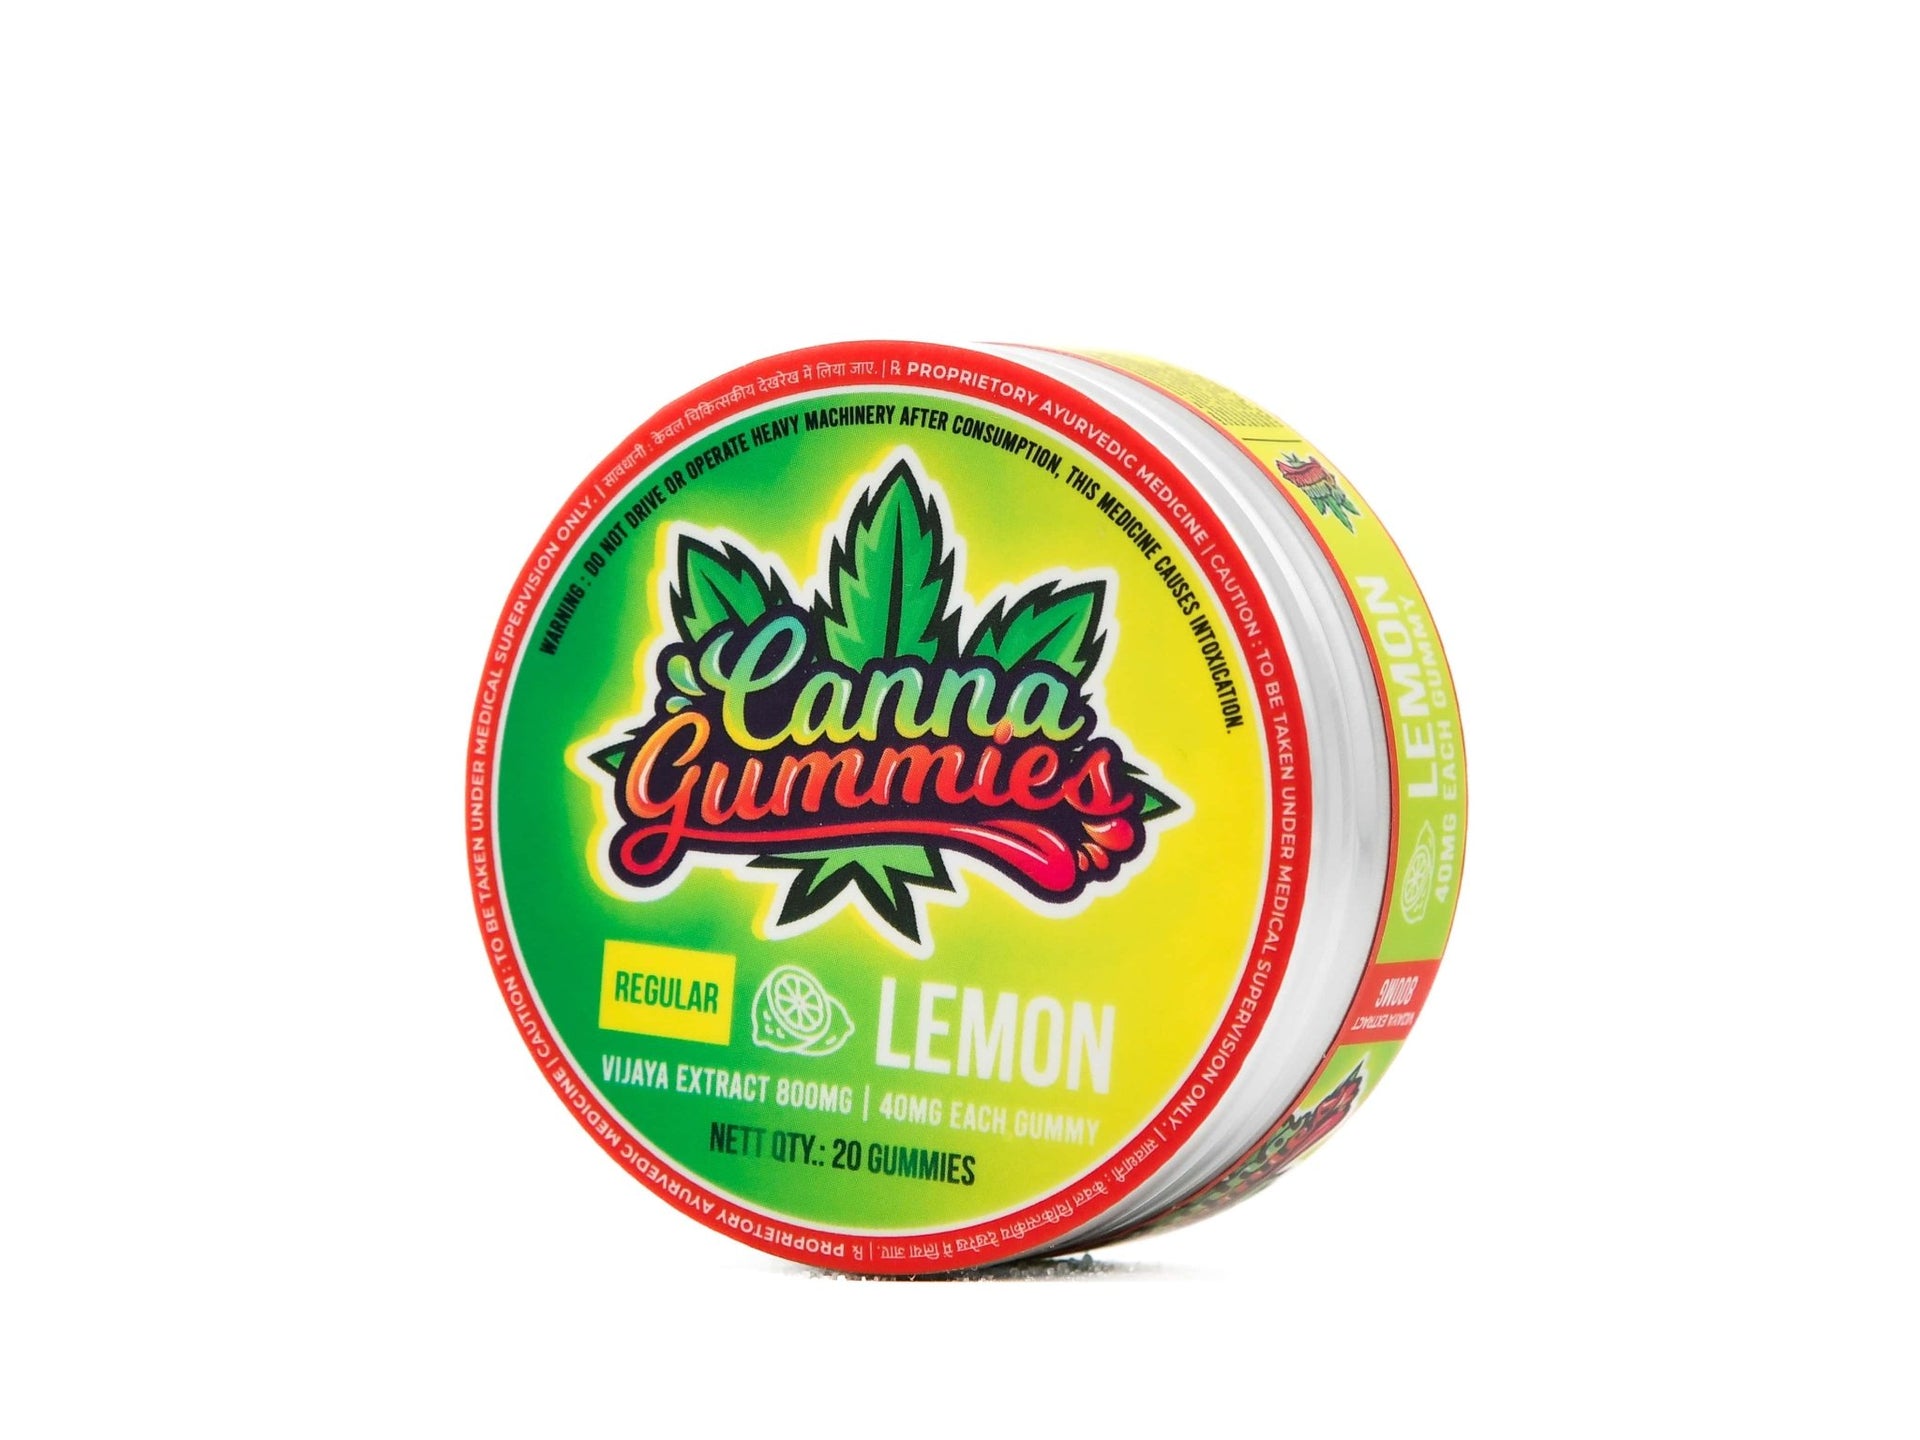 Cannabis Infused Gummies 1:1 - Lemon - CBD Store India